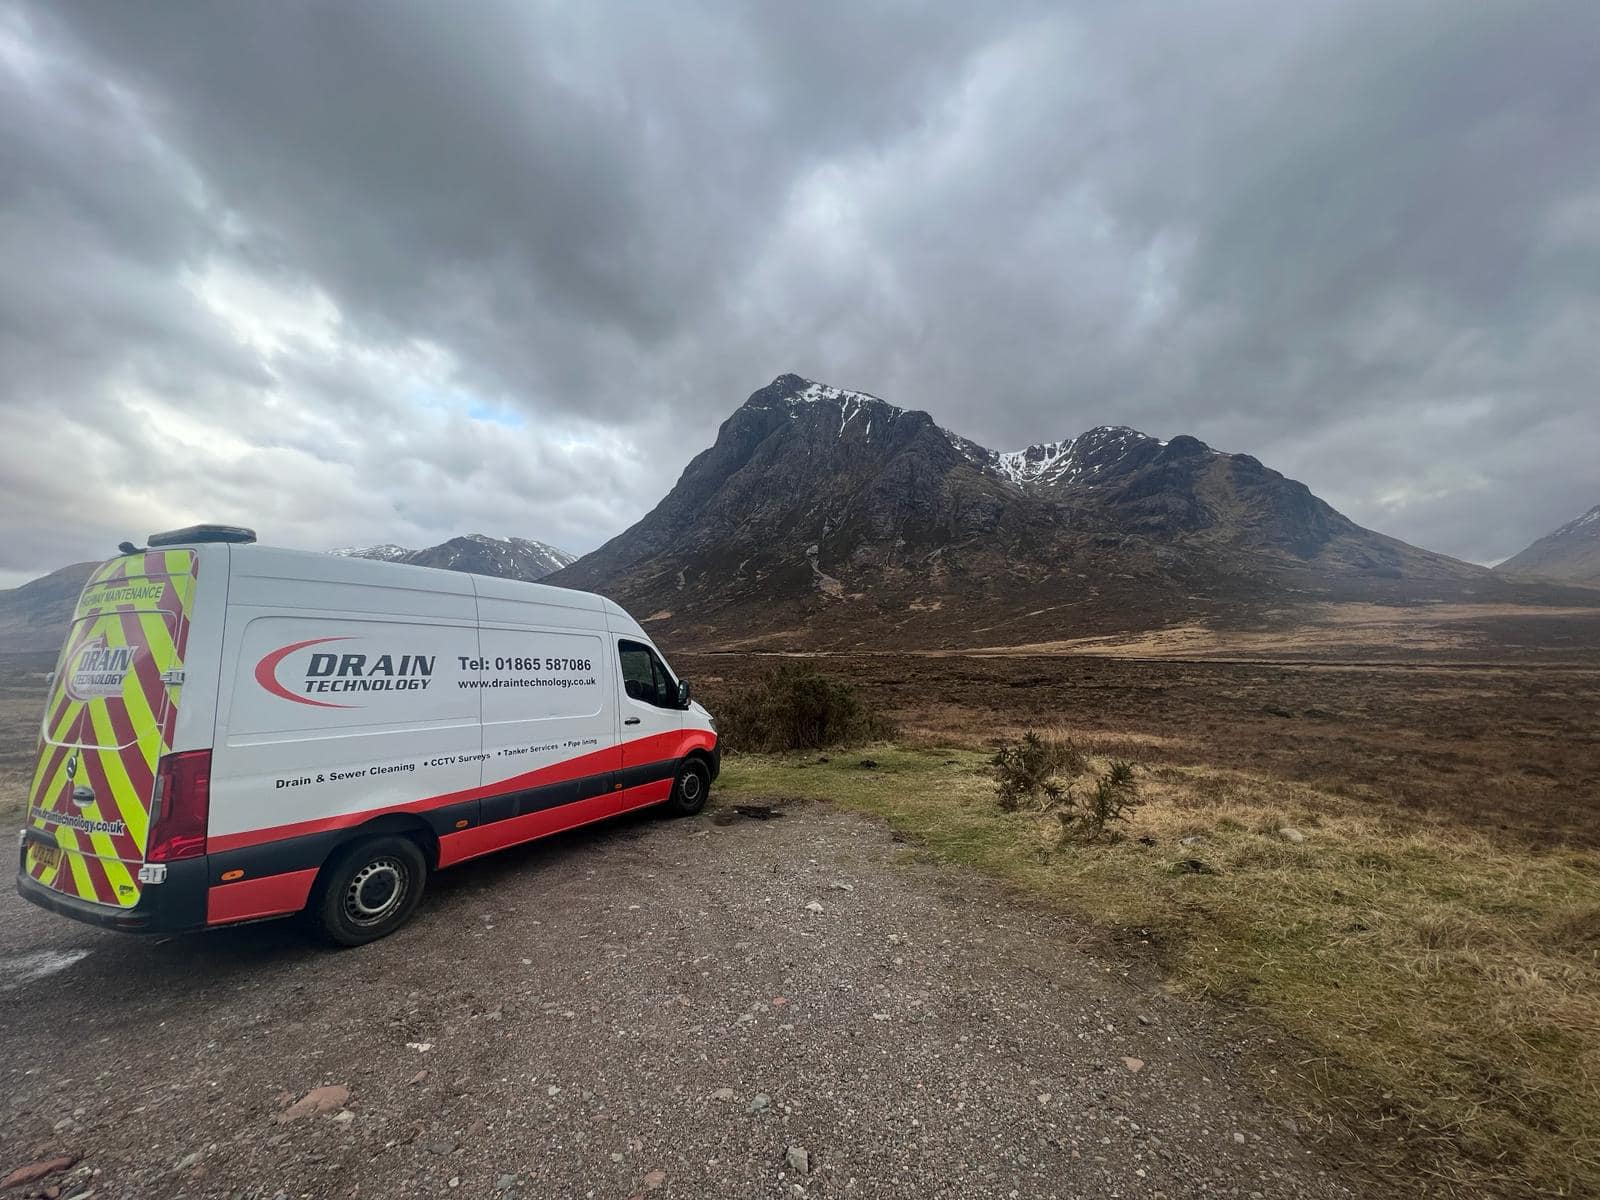 Drain Technology van in front of Scottish mountain range